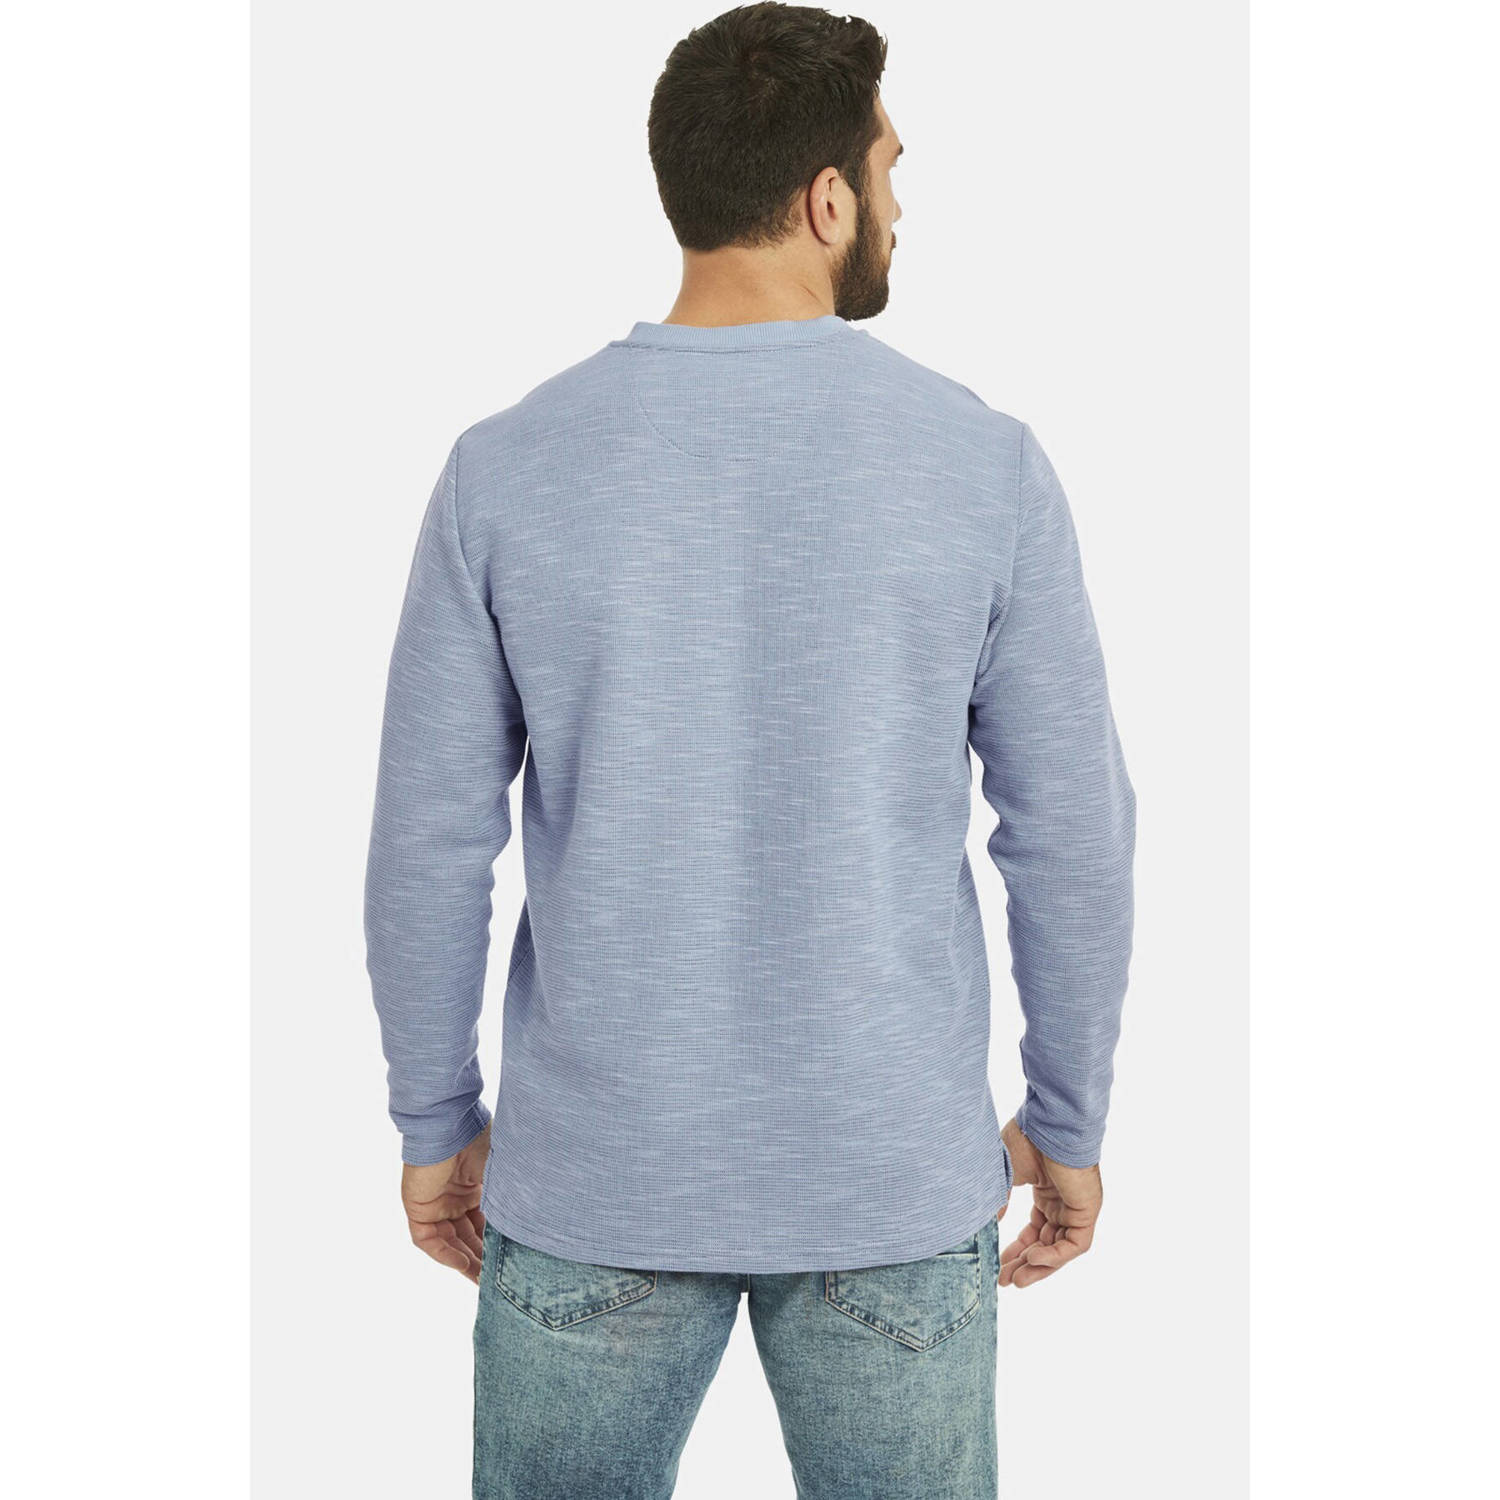 Jan Vanderstorm gemêleerde sweater REGINALD Plus Size blauw